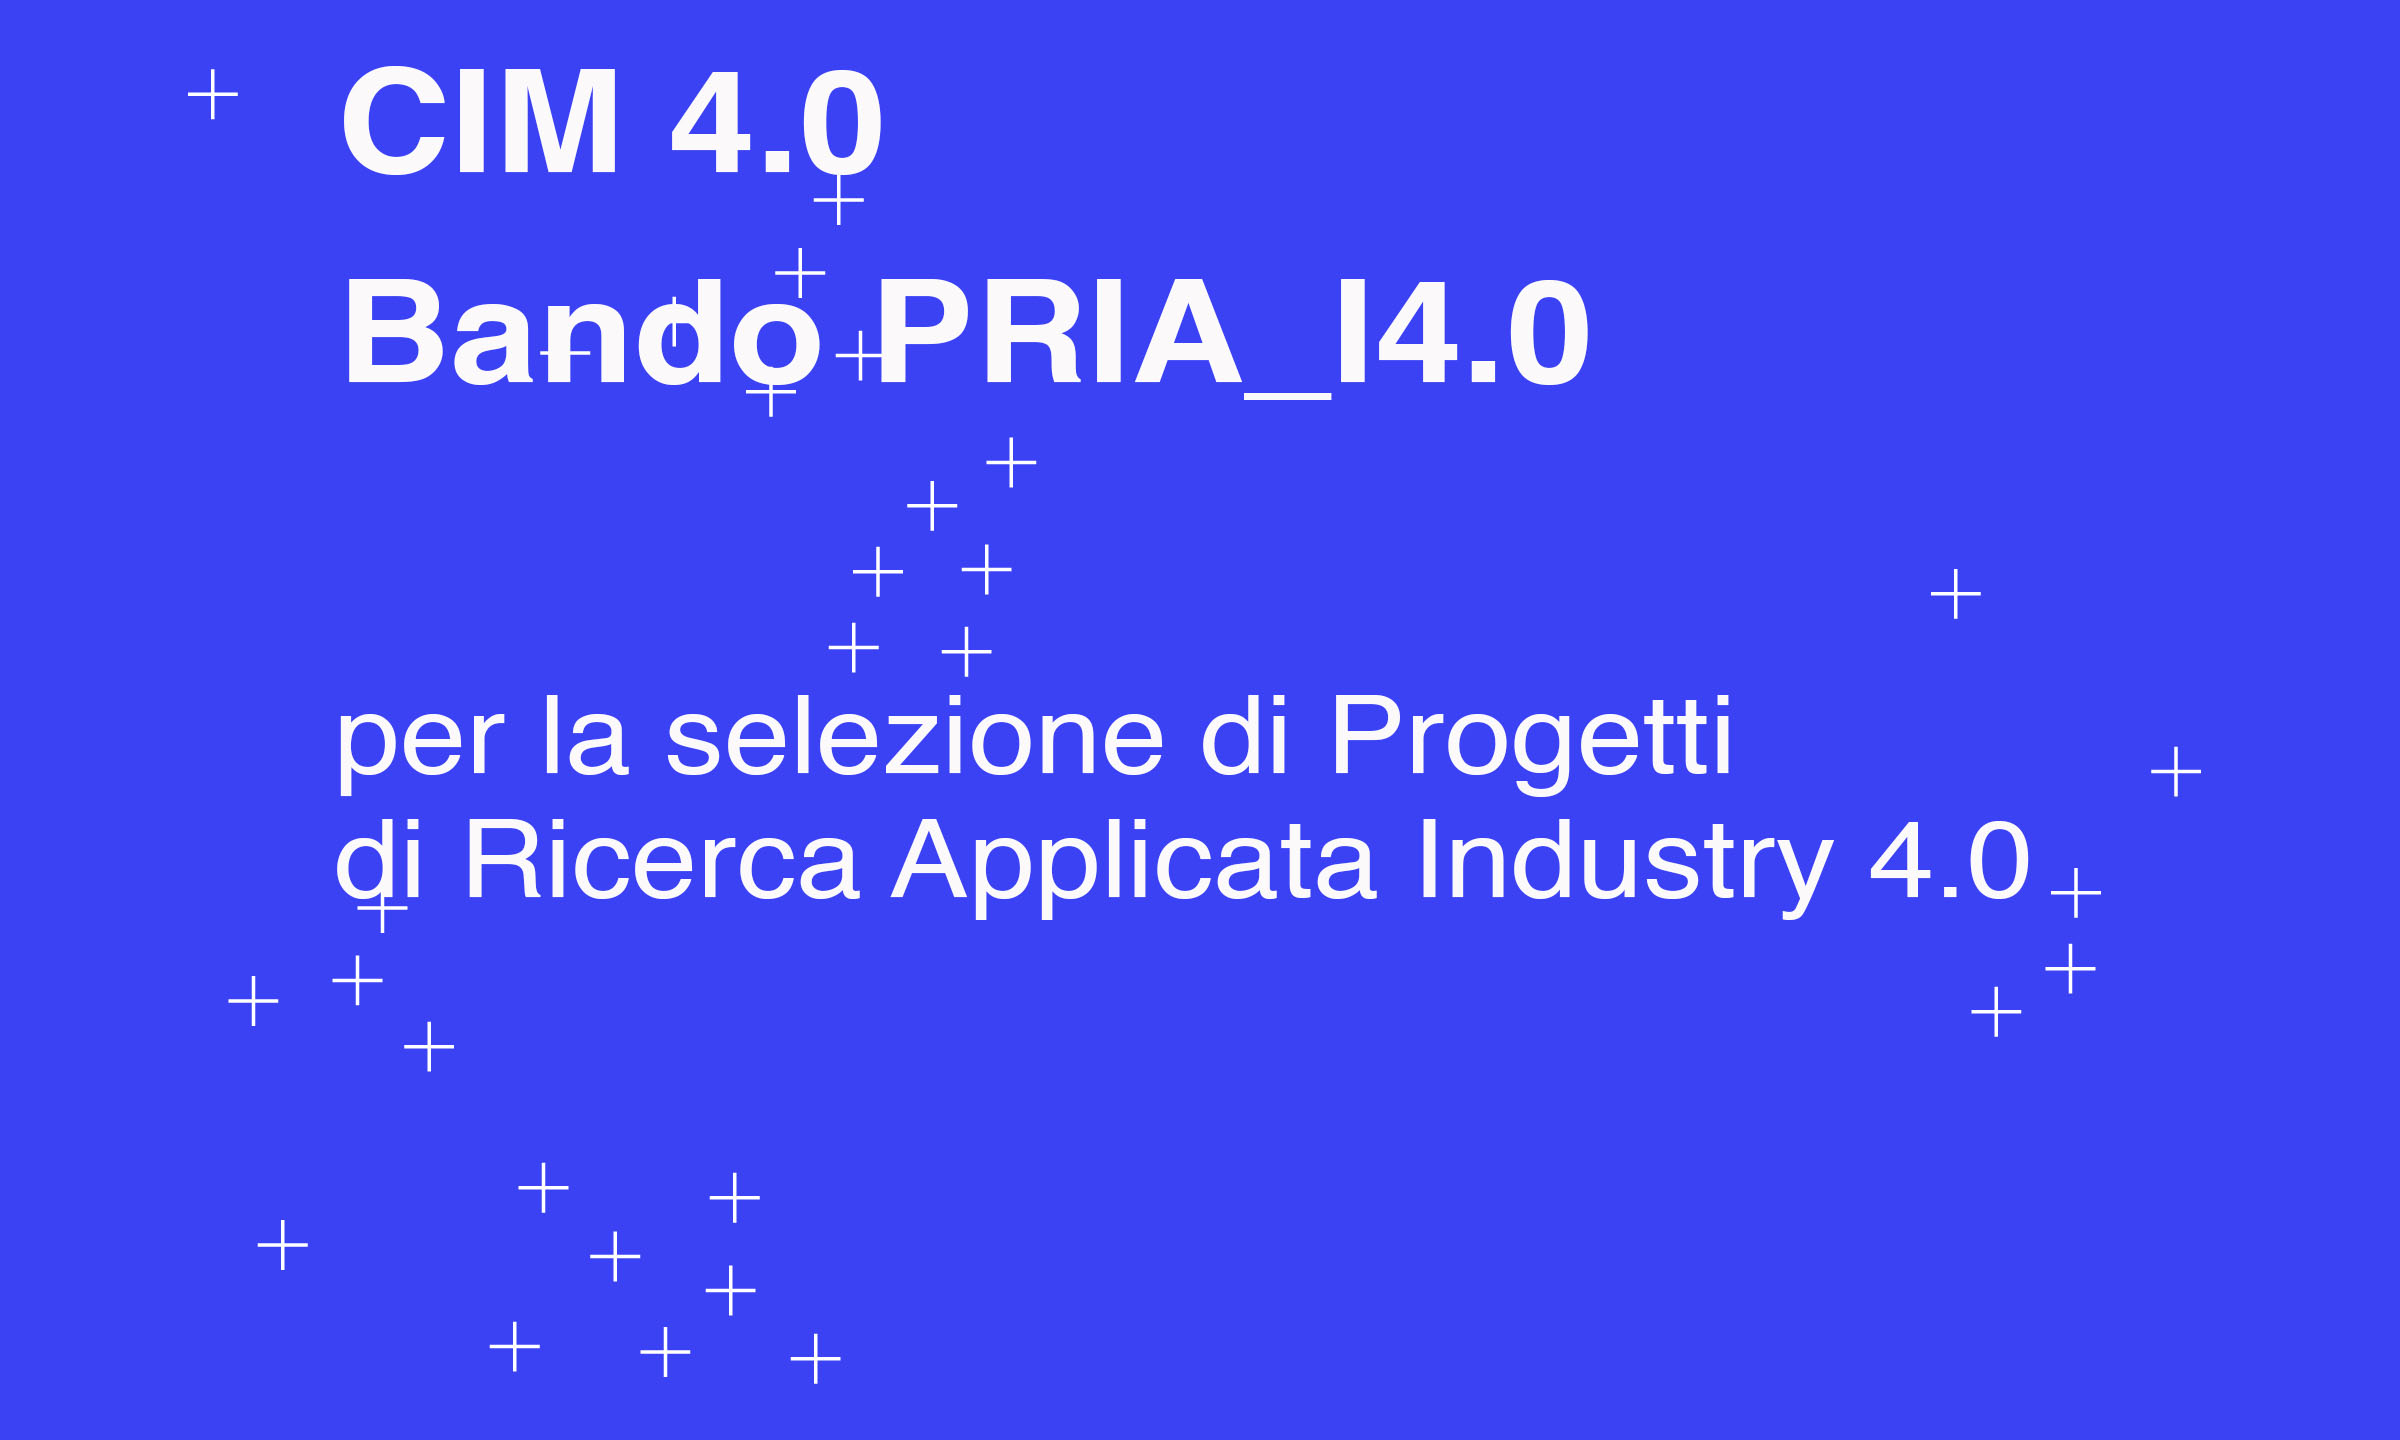 Bando CIM 4.0 per Progetti di Ricerca Applicata Industry 4.0